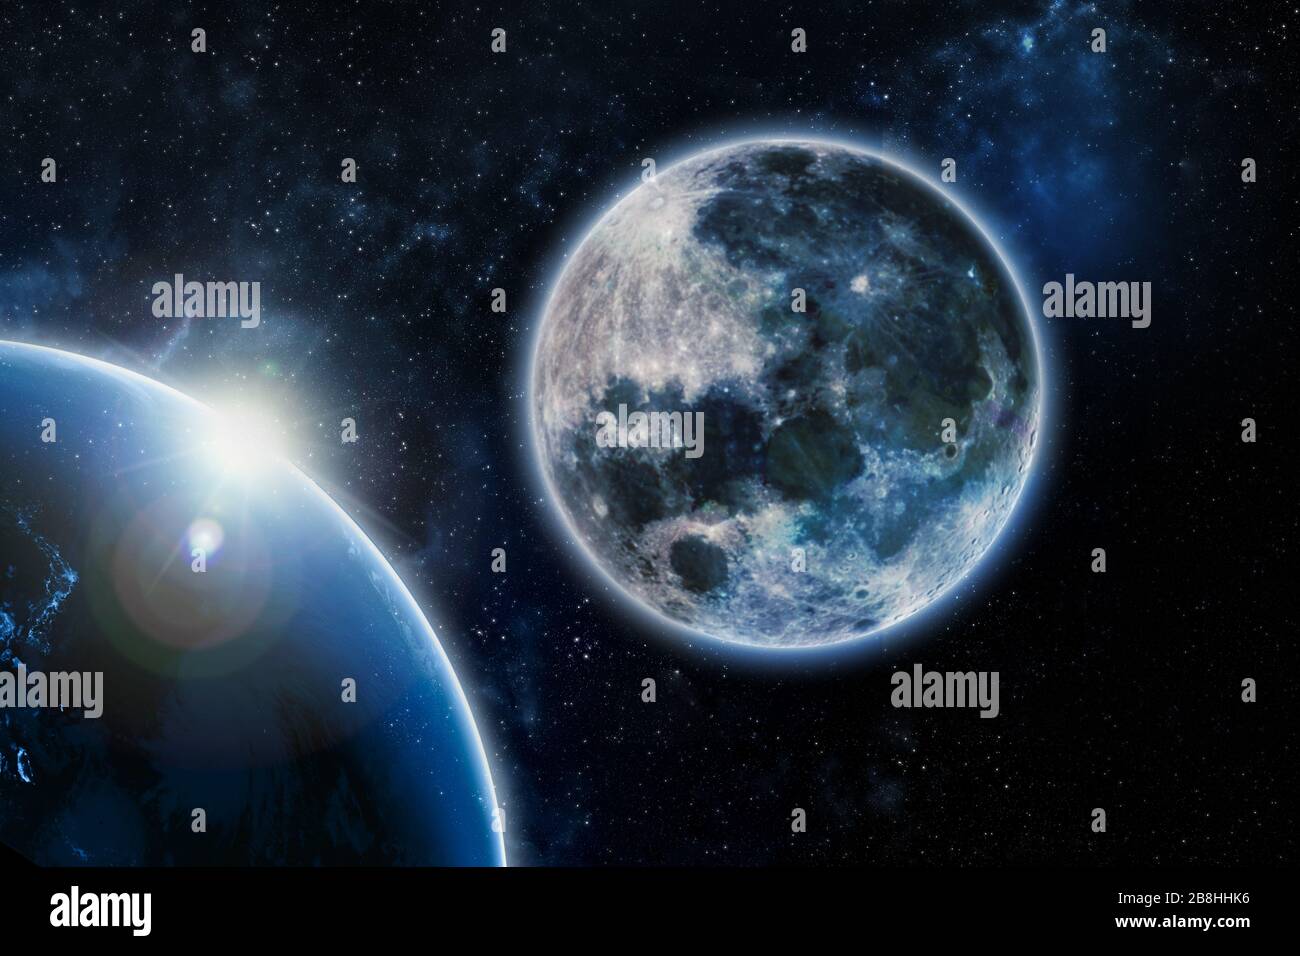 Mond und die Erde Elemente dieses Bildes, das von der NASA eingerichtet wurde Stockfoto